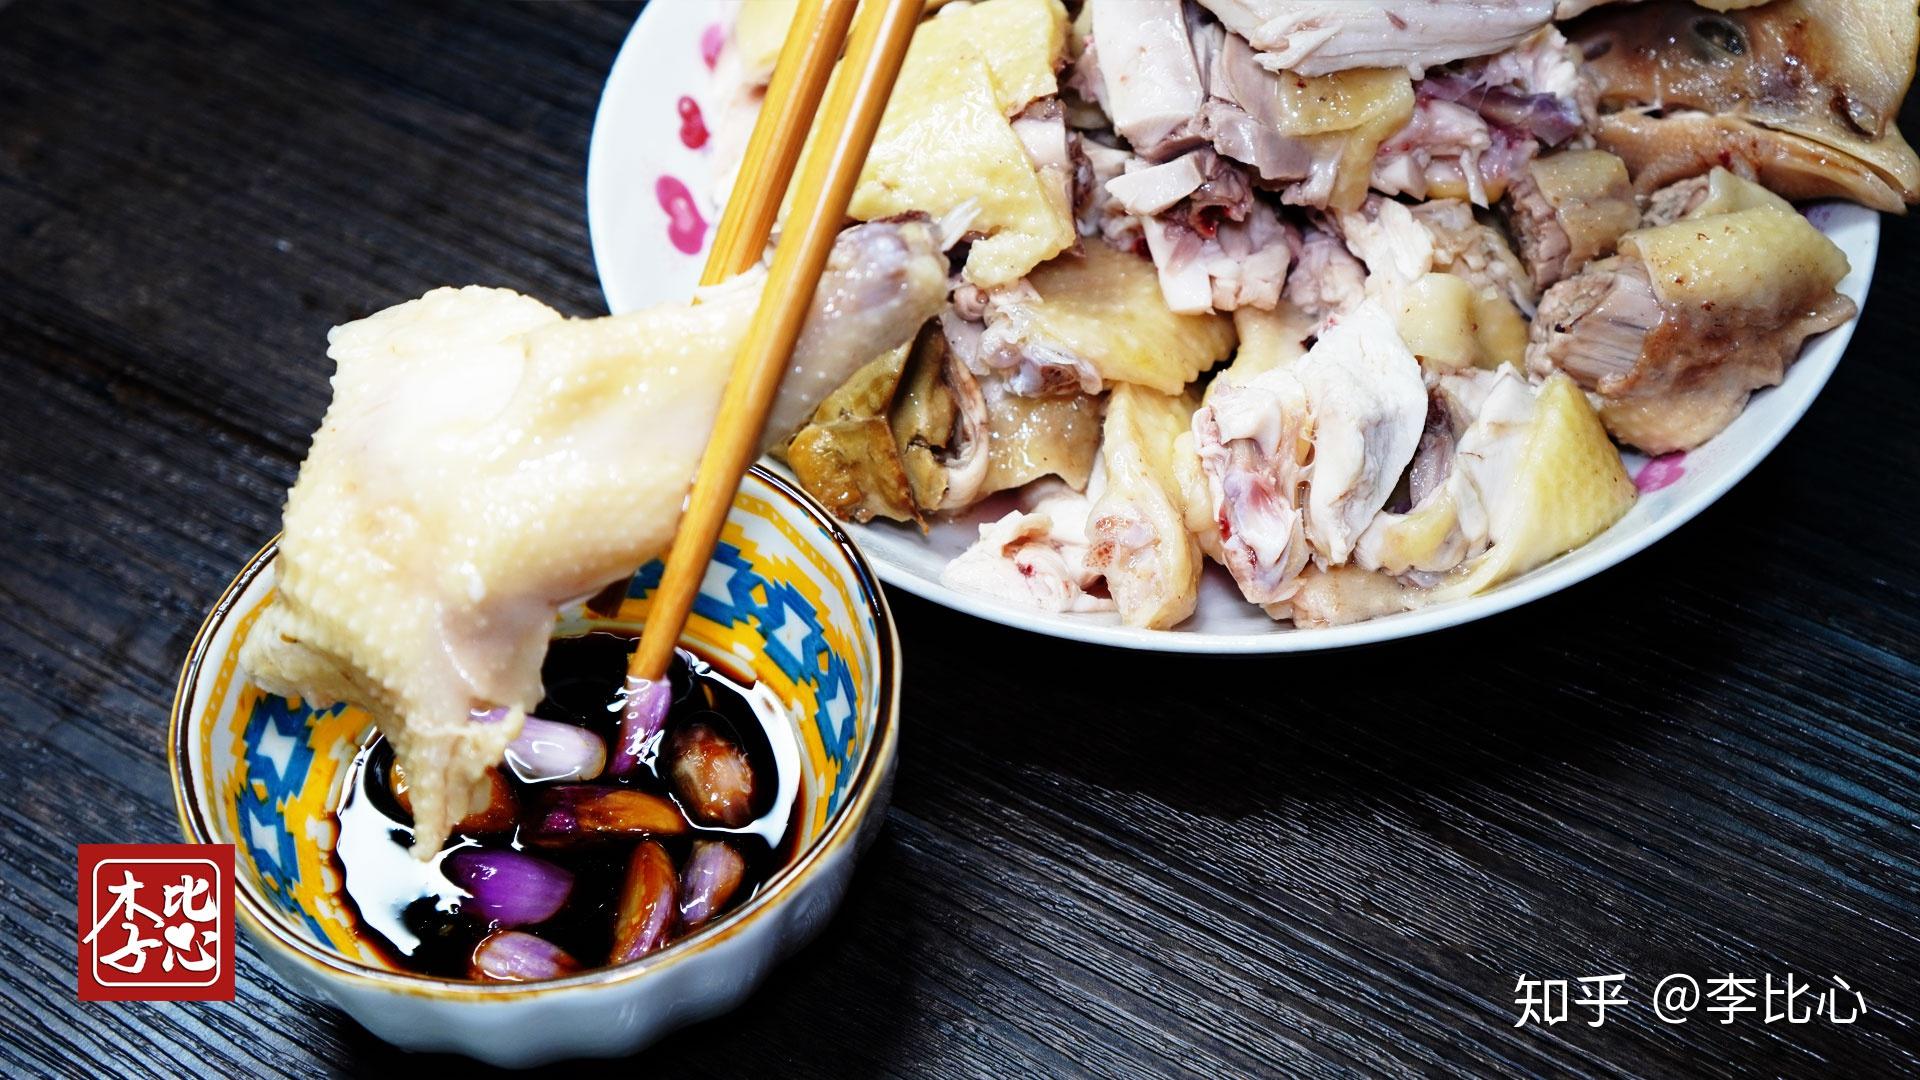 广东粤西特色菜品:隔水清蒸鸡,做出来的鸡嫩滑爽口,搭配酱油简直美味!